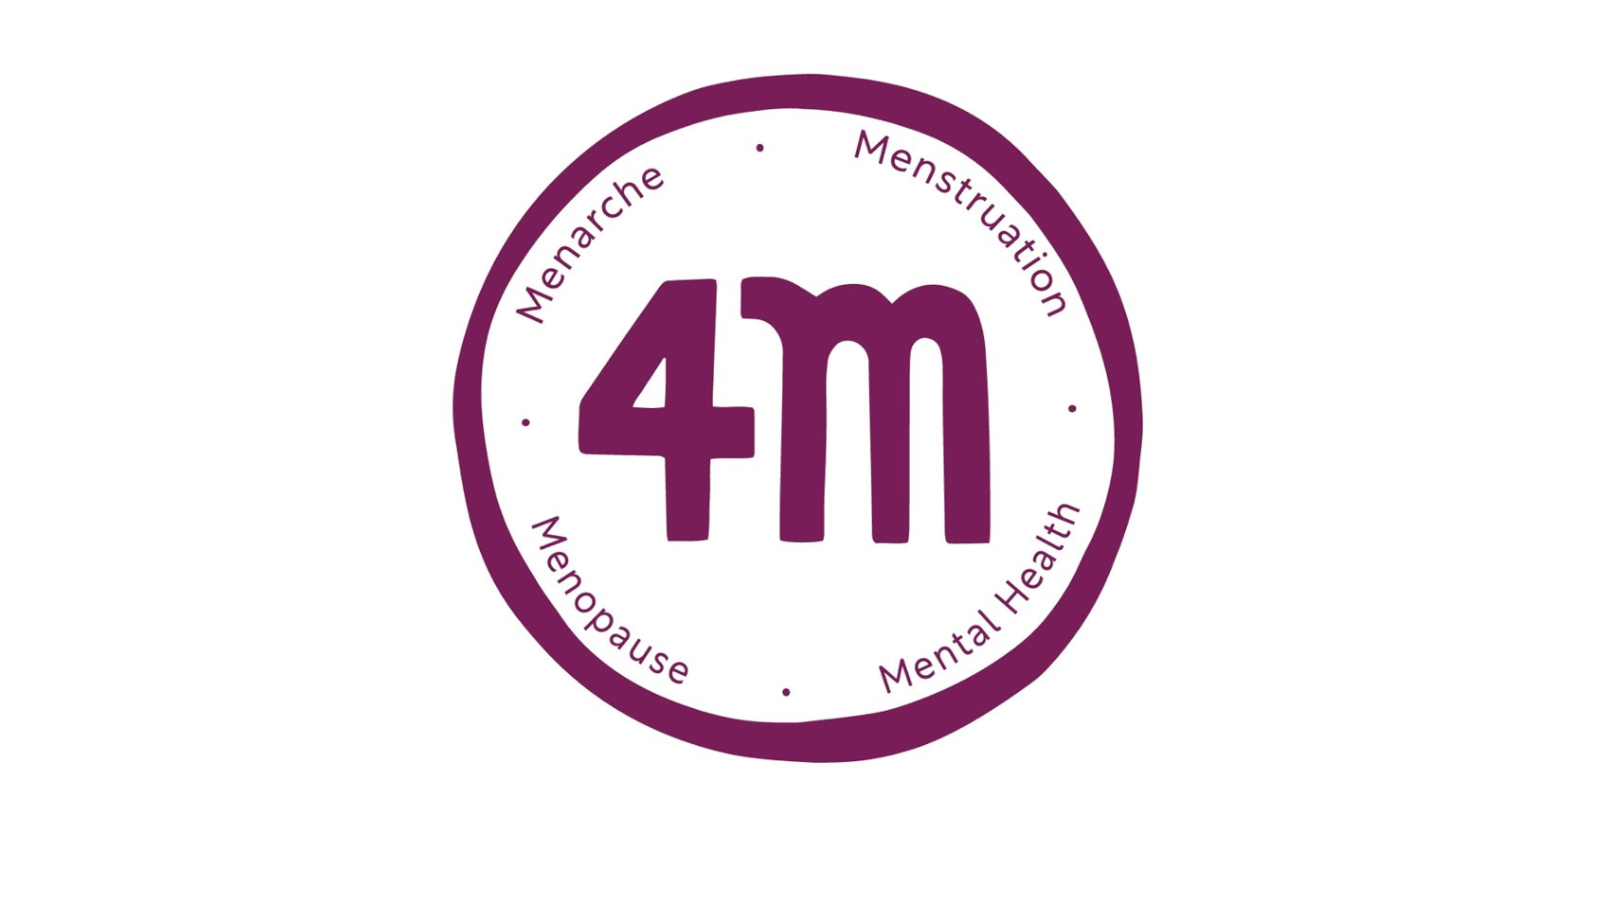 4M Consortium tackles interweaving nature of menstrual and mental health